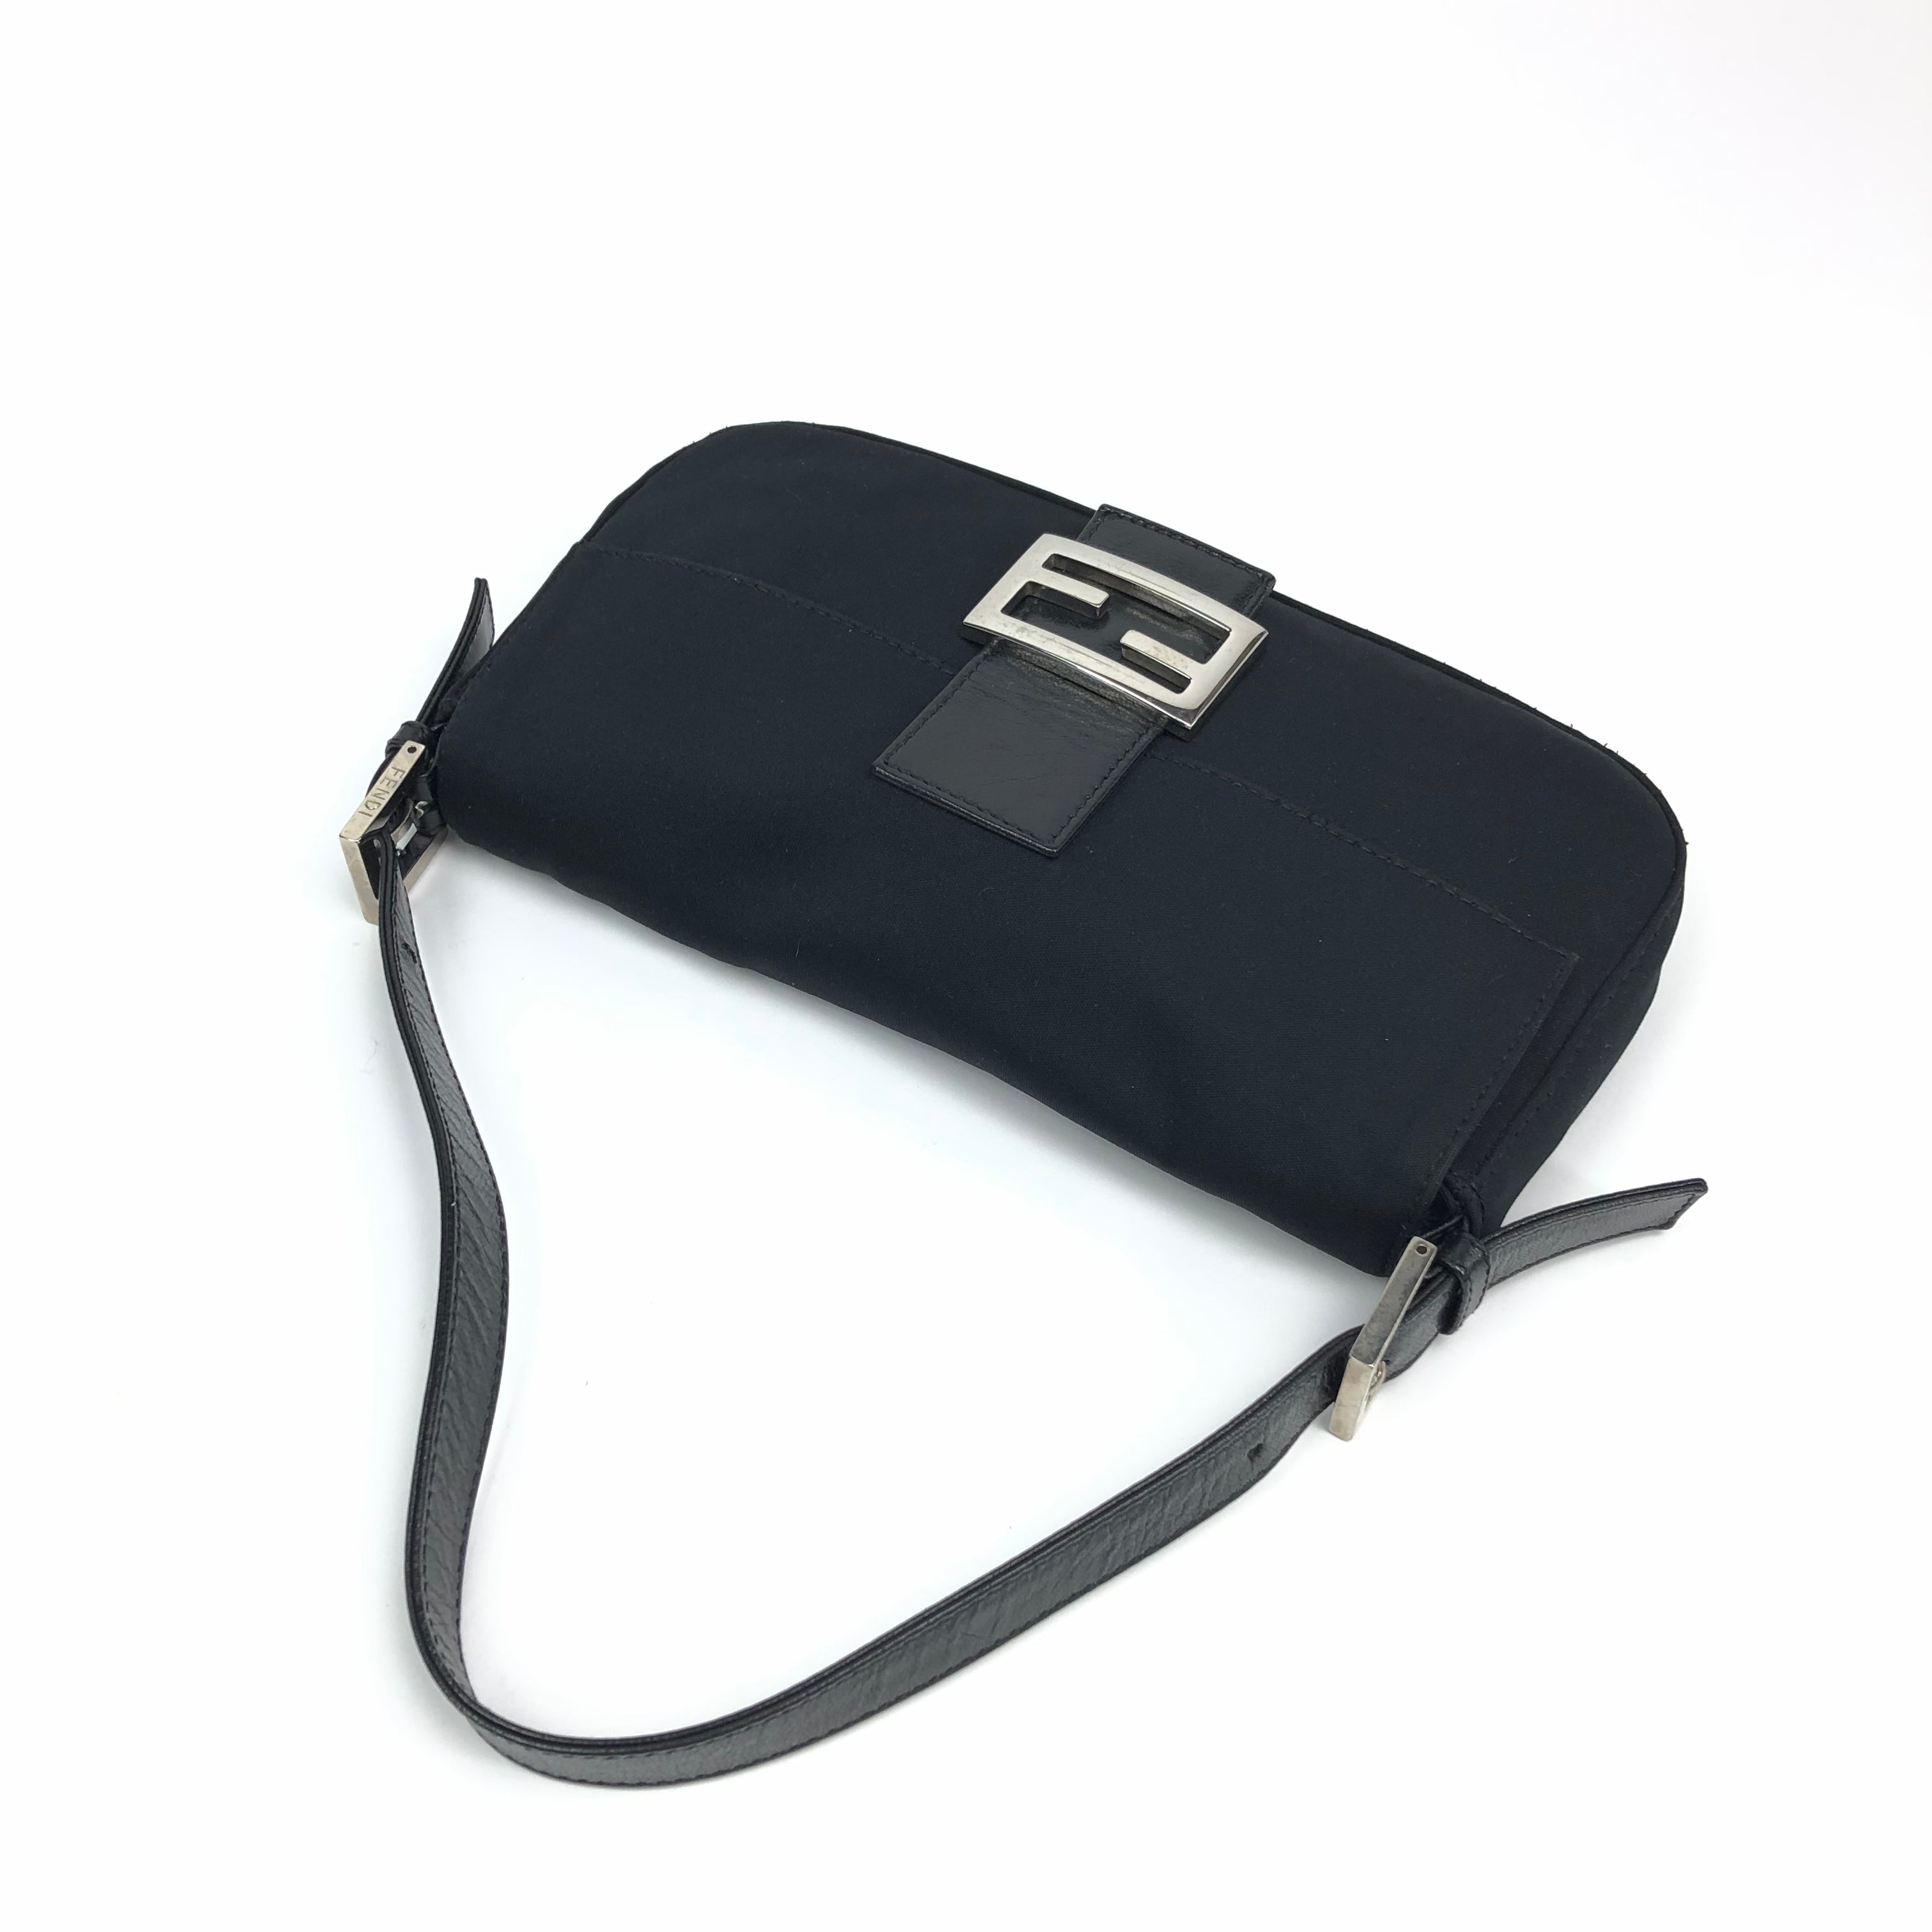 Fendi Jersey Baguette Shoulder Bag in Black